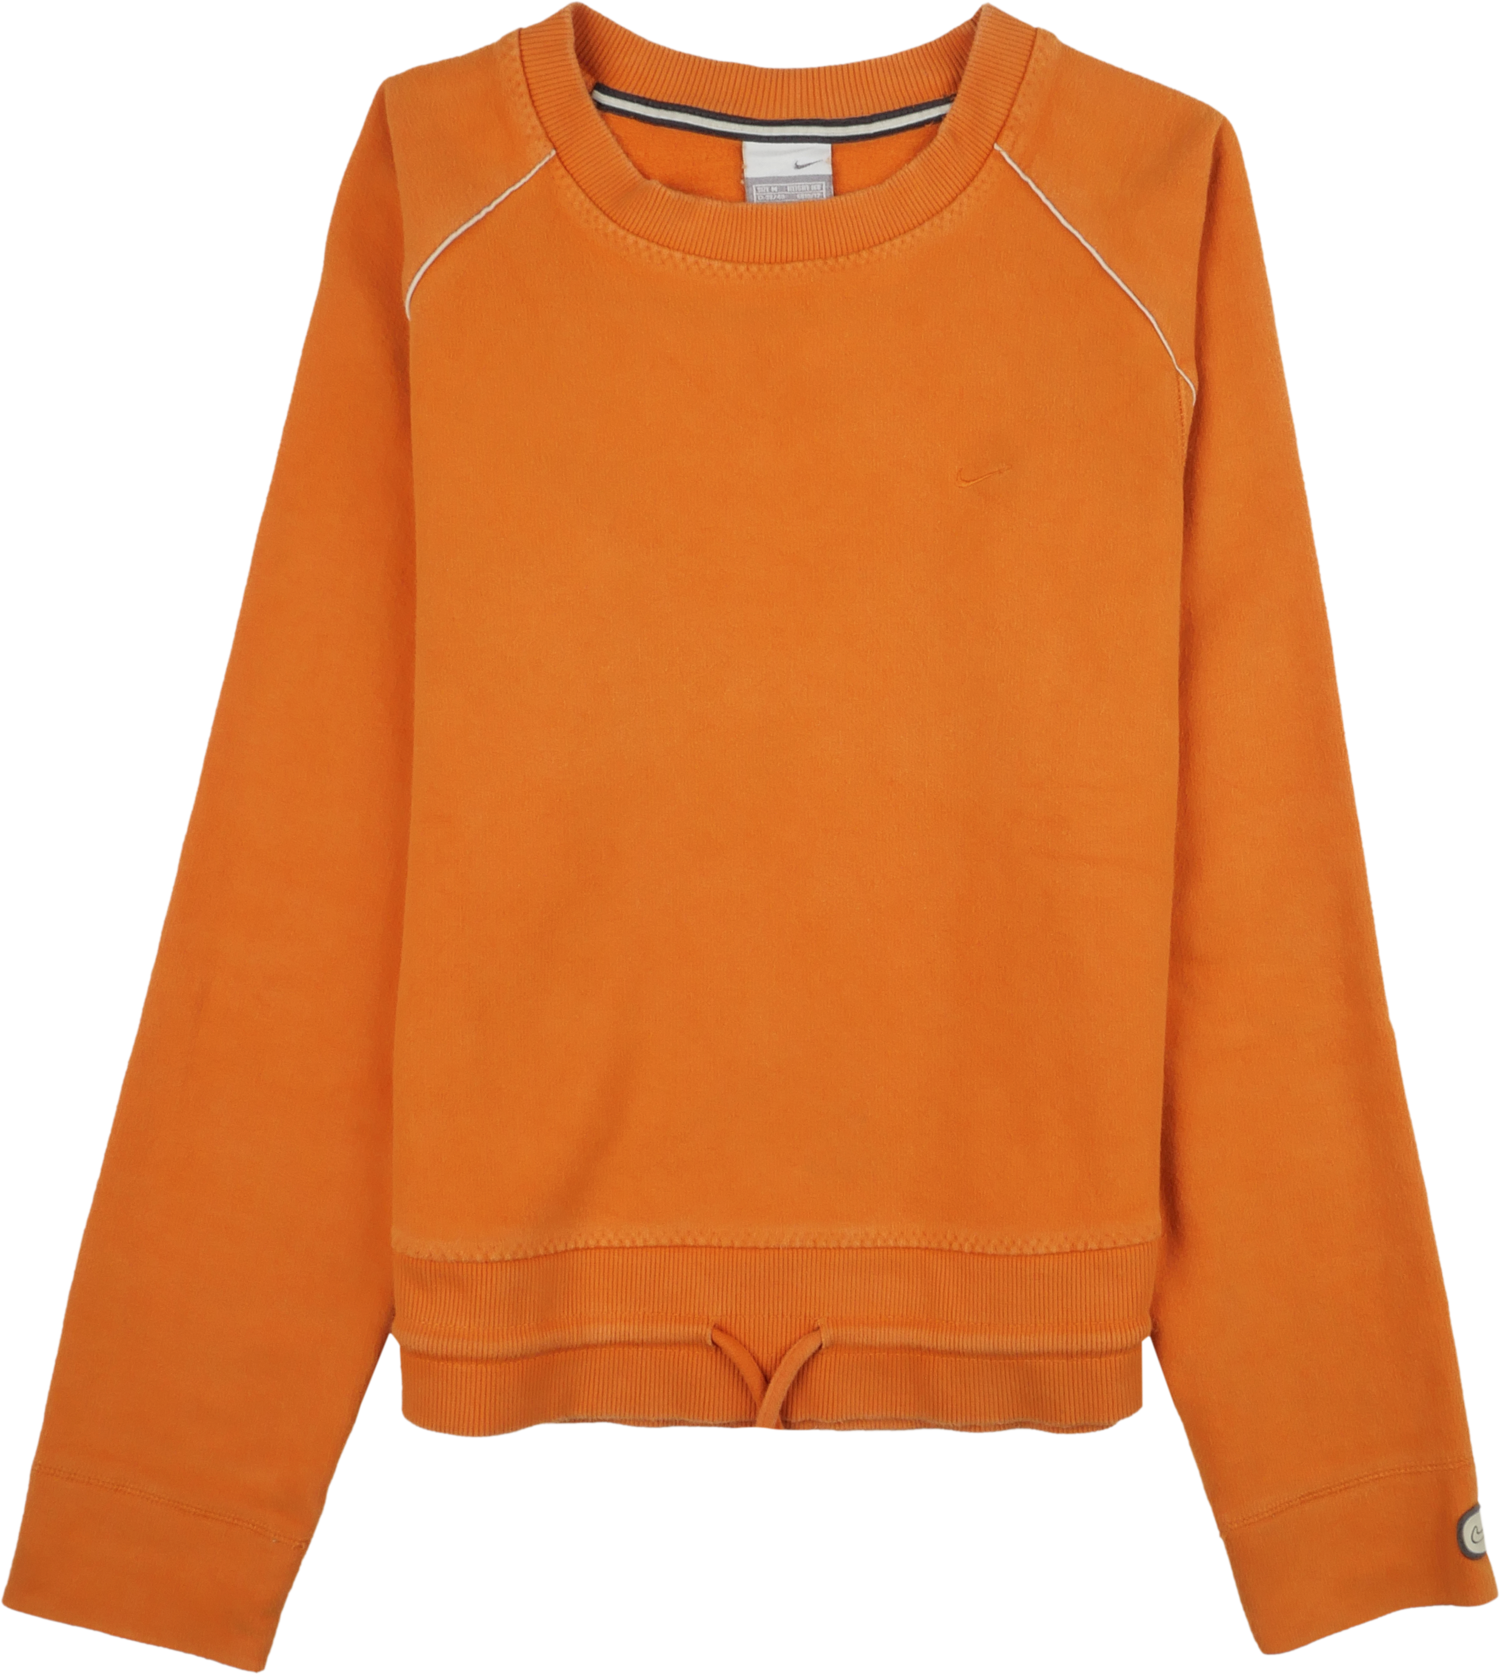 Nike Pullover orange